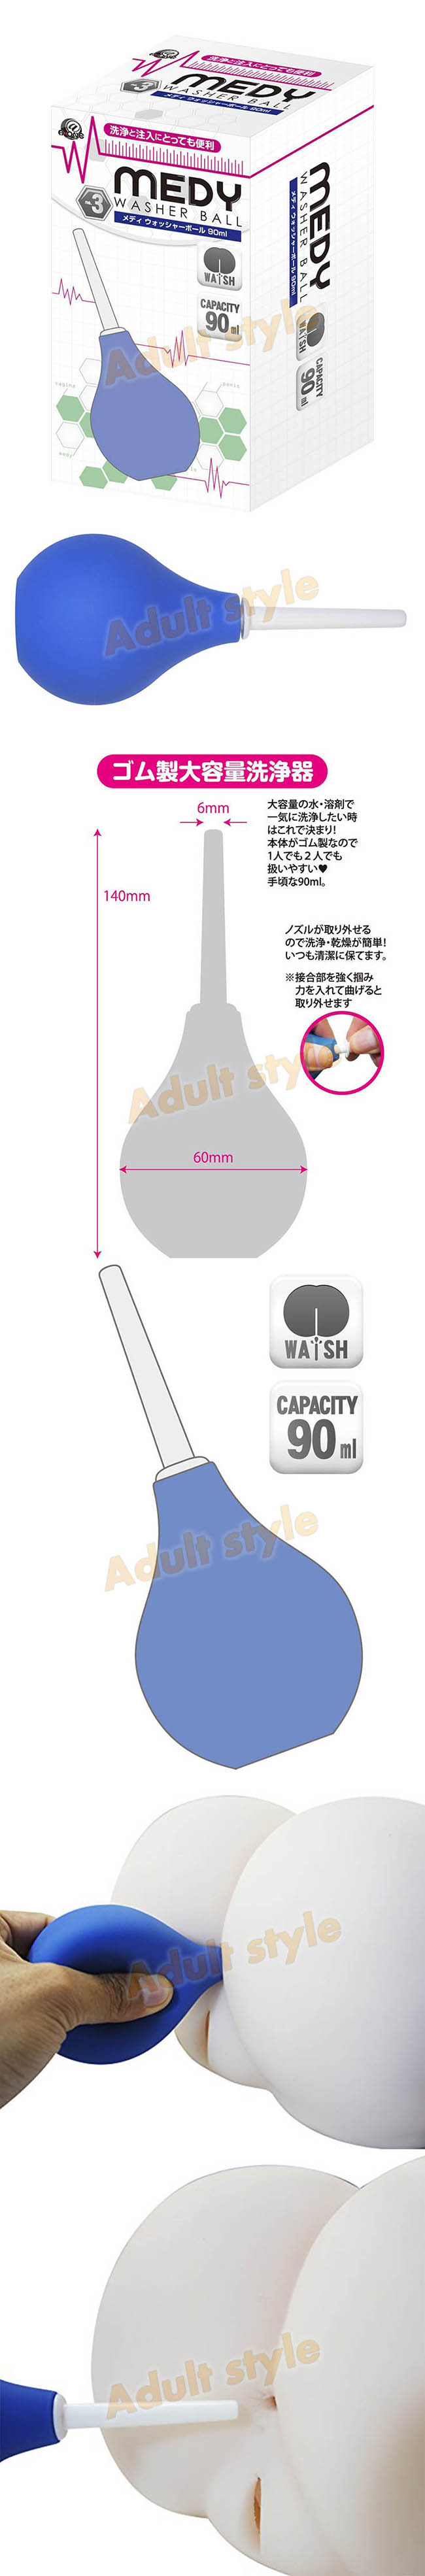 情趣精品-日本A-ONE MEDY肛門灌腸圓球洗淨器(90ml)